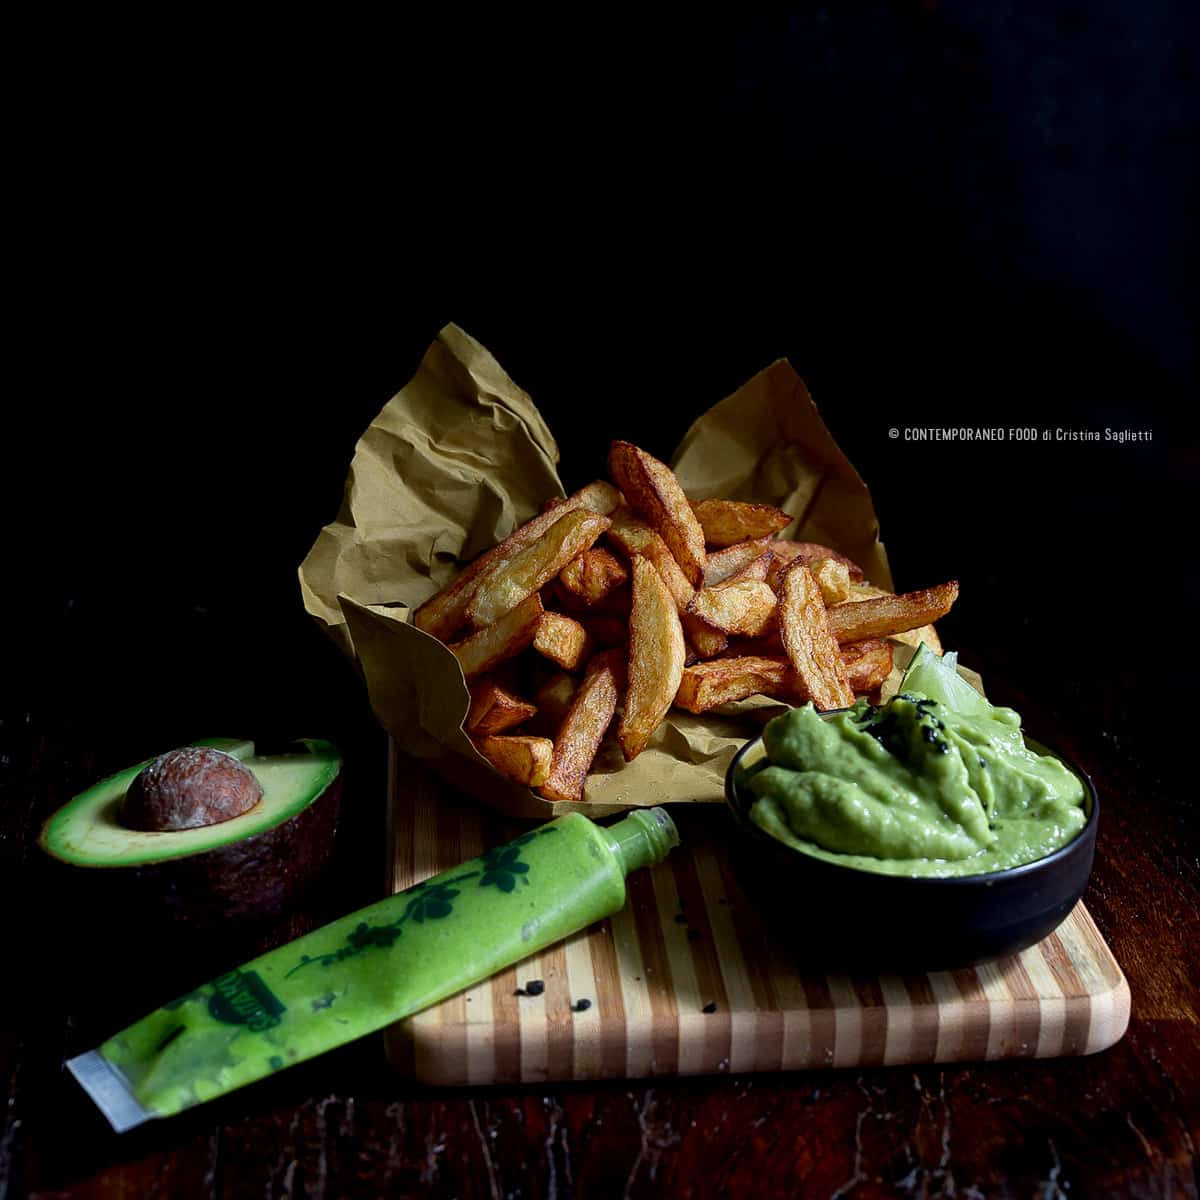 patatine-fritte-con-dip-di-avocado-e-wasabi-ricetta-facile-vegetariana-ricetta-contemporaneofood